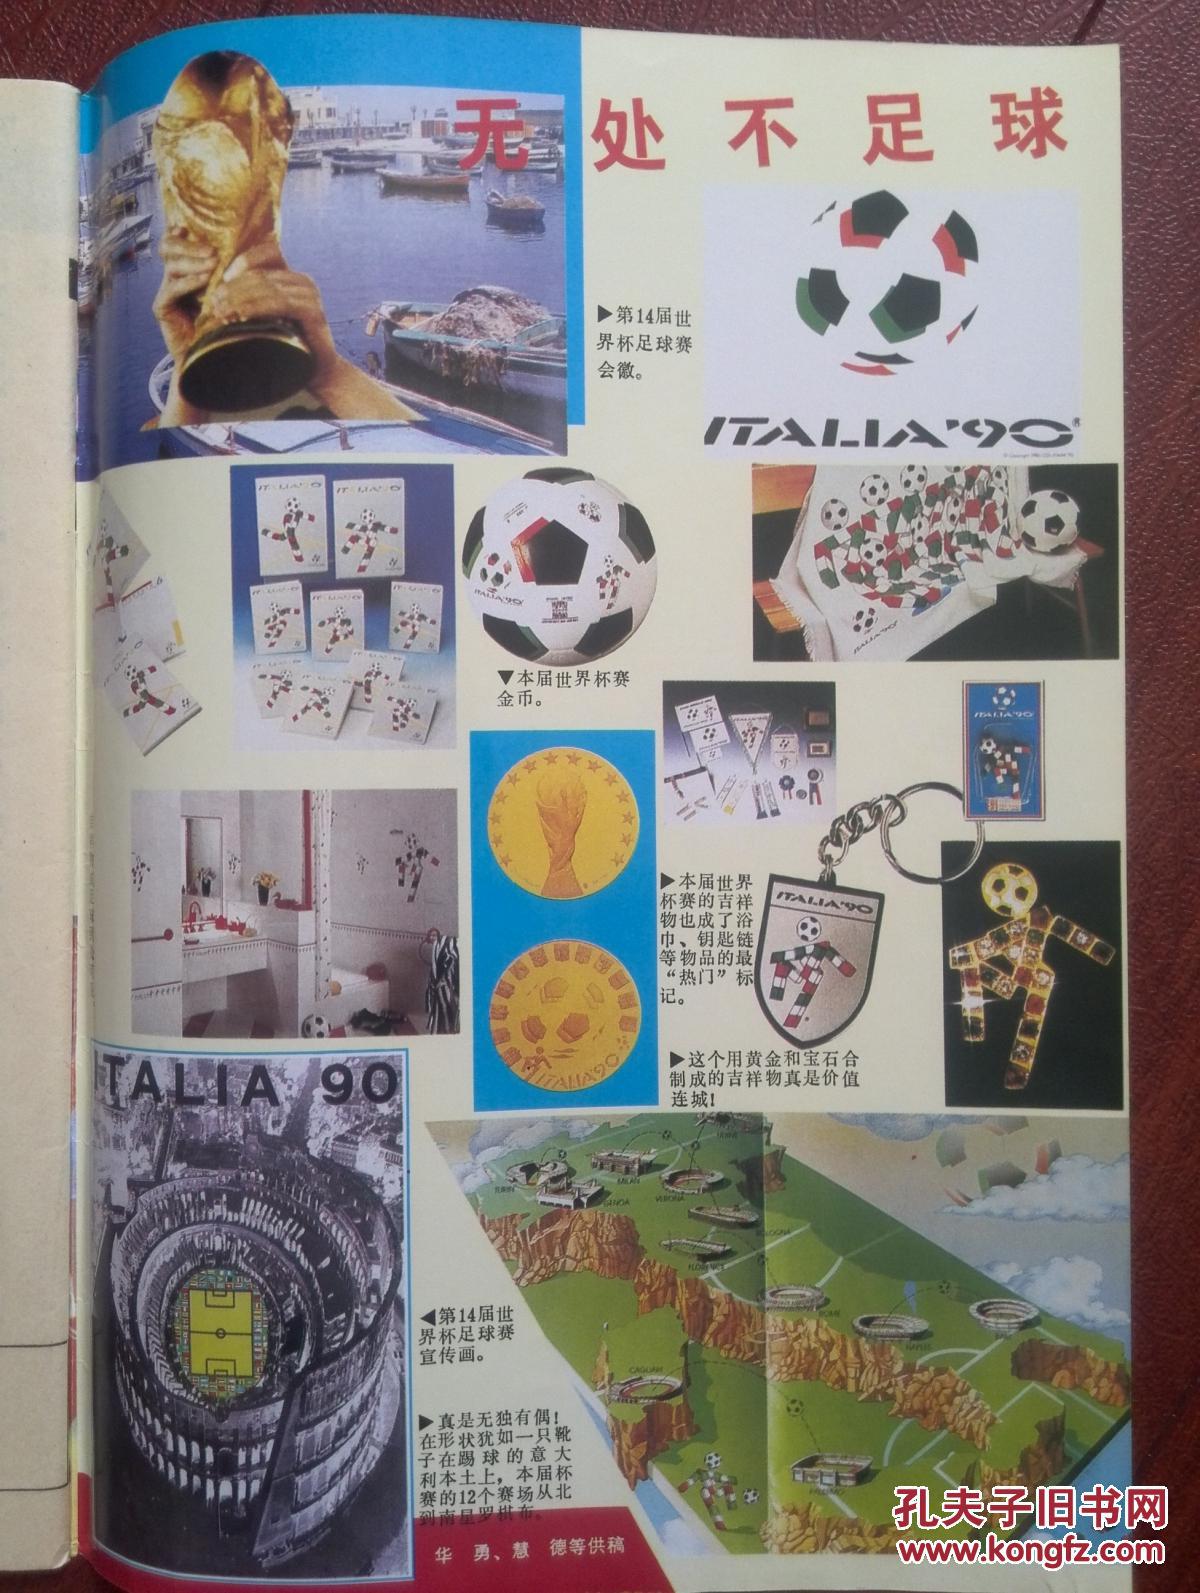 【图】新体育1990意大利世界杯特辑,24强巡礼